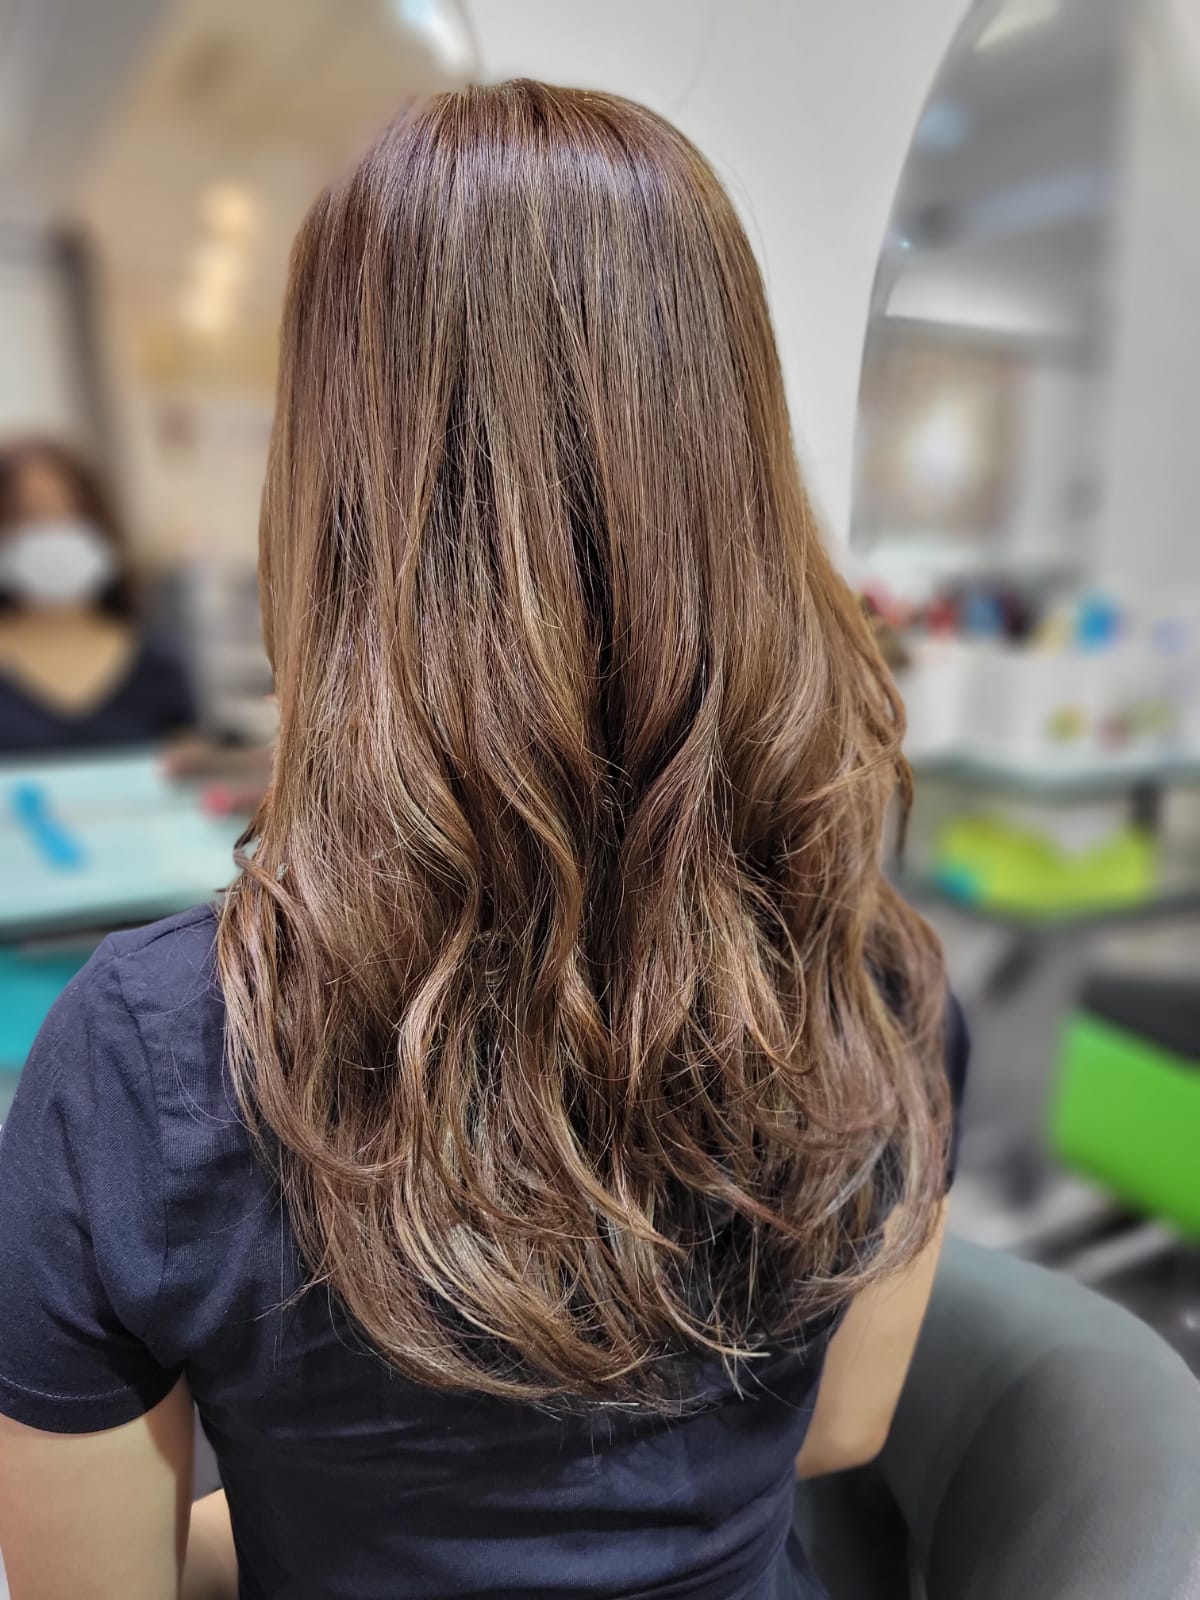  I do Hair ®之髮型作品: ☀日本美髮技術，讓您擁有日系髮型及髮色☀